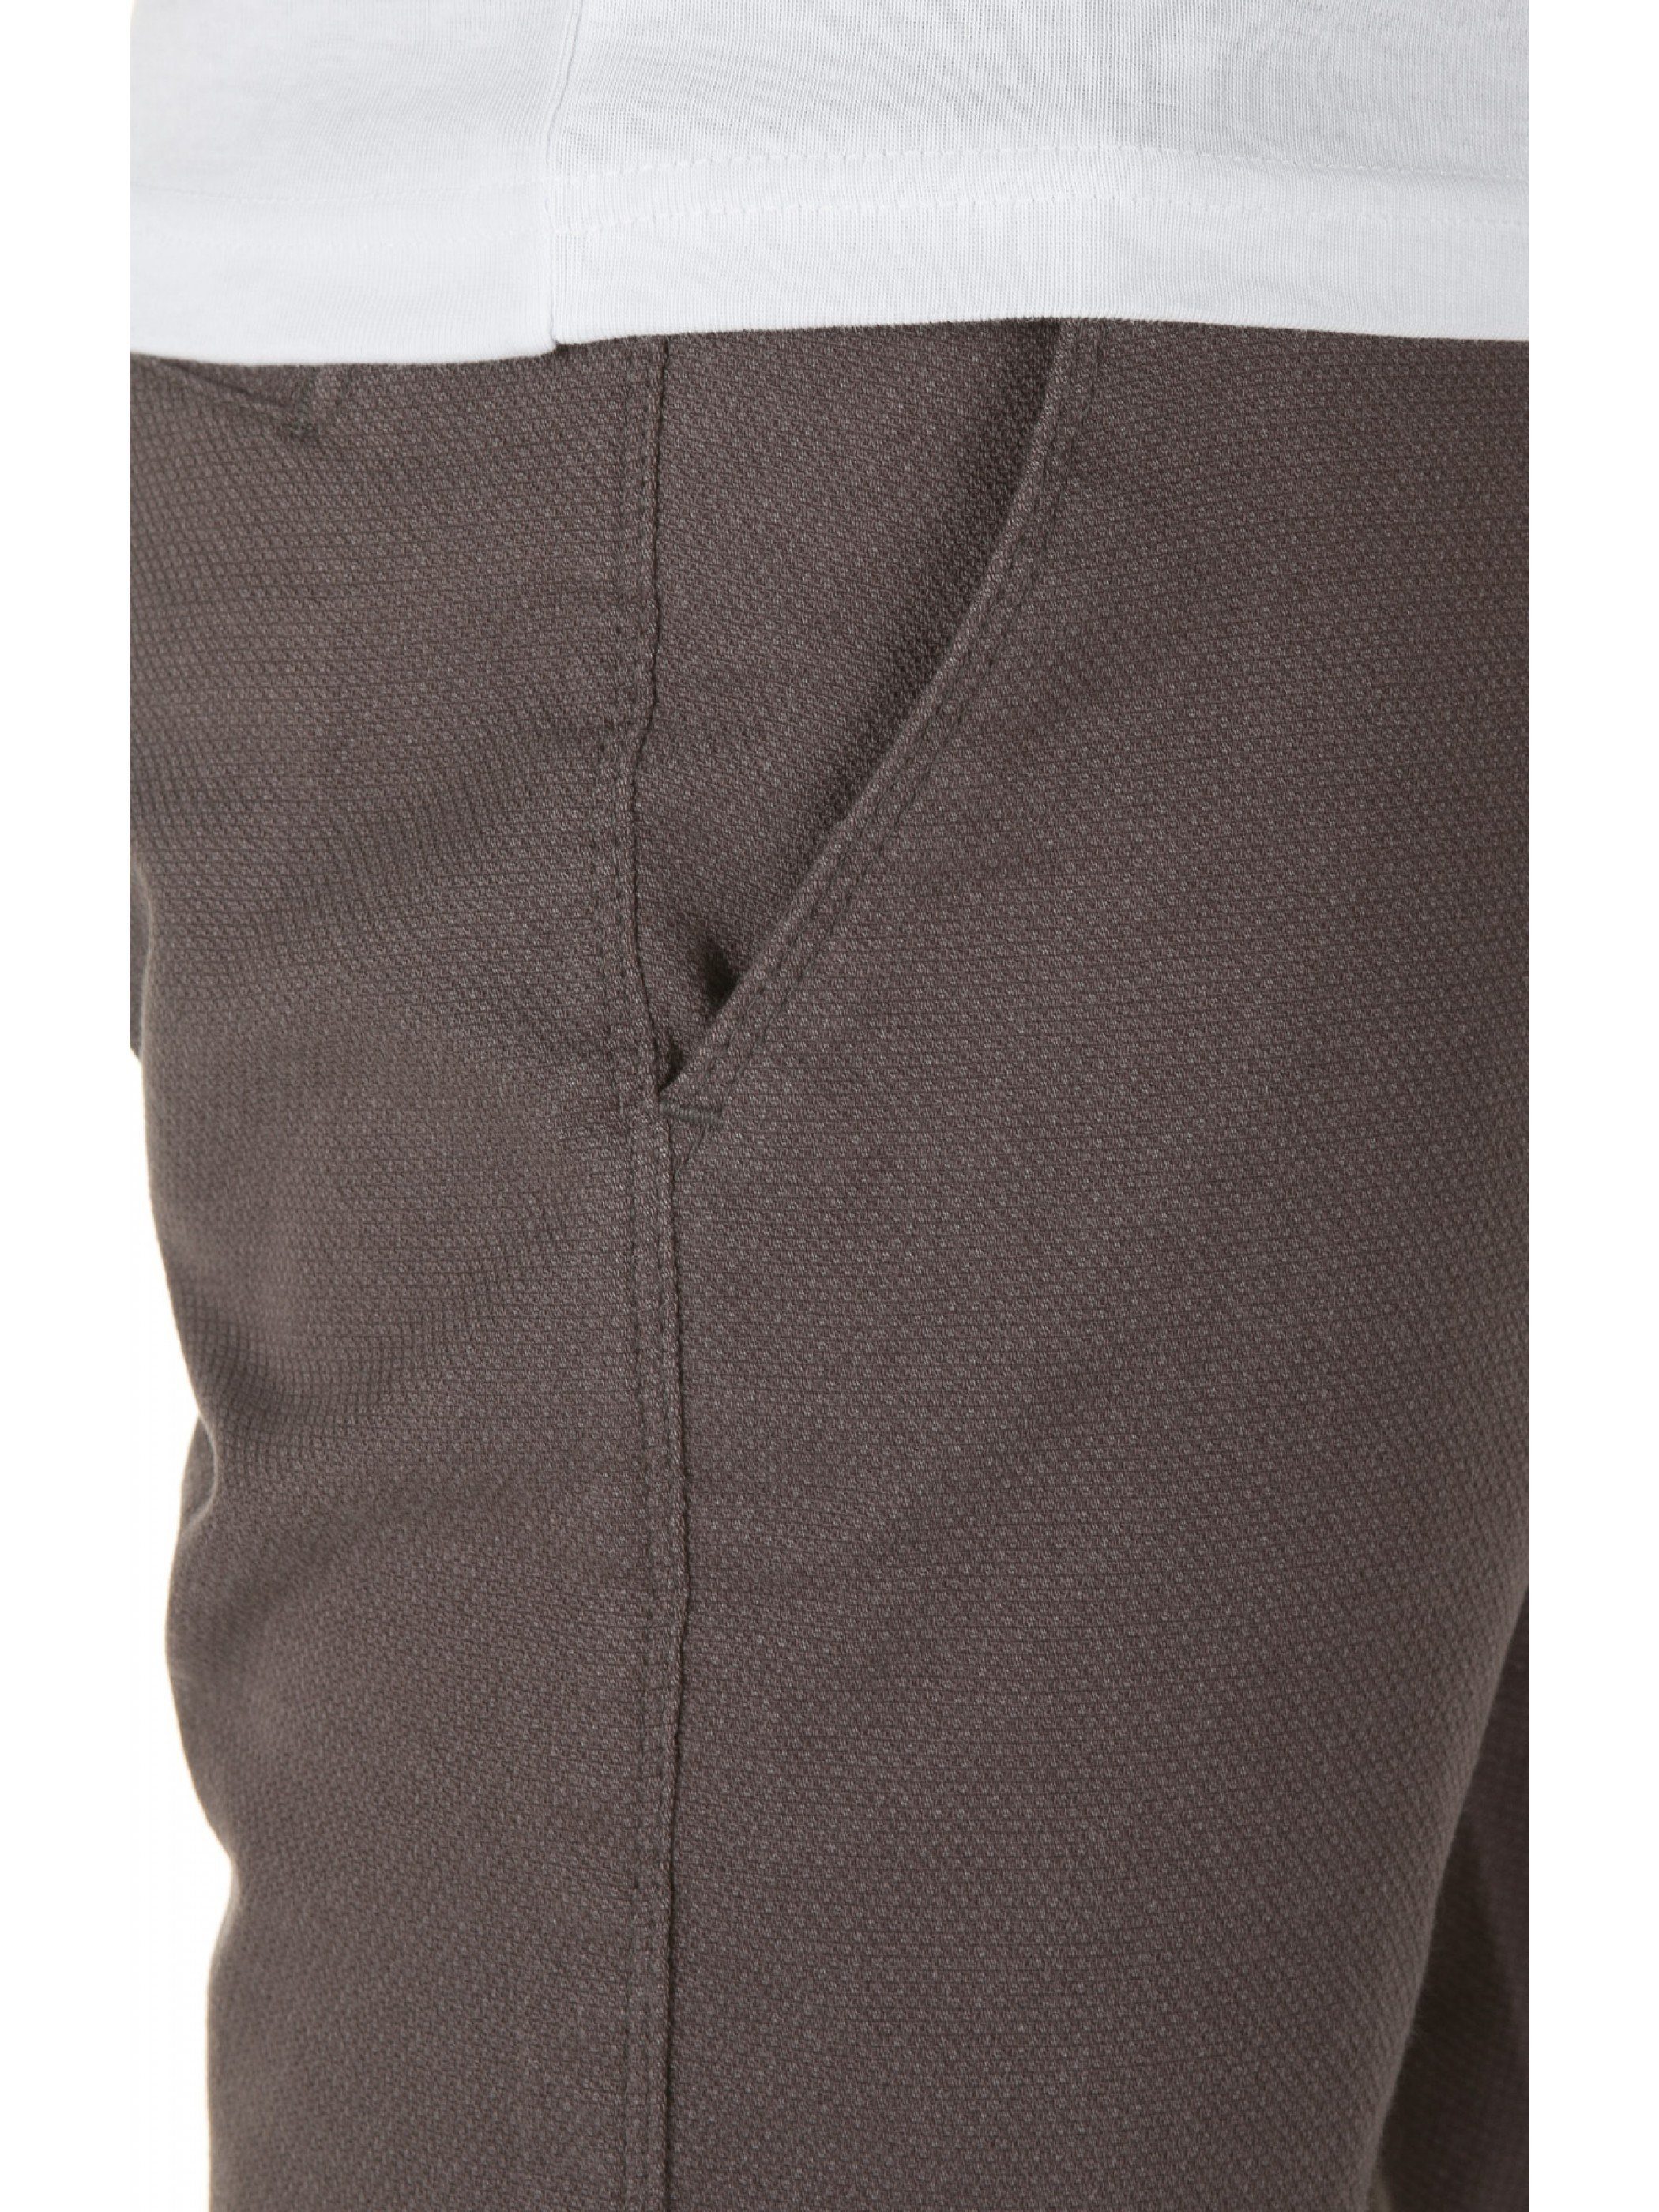 Rengar (grey hohem mit pavement Chinohose Pants Tragekomfort WOTEGA 3900) Grau Chino